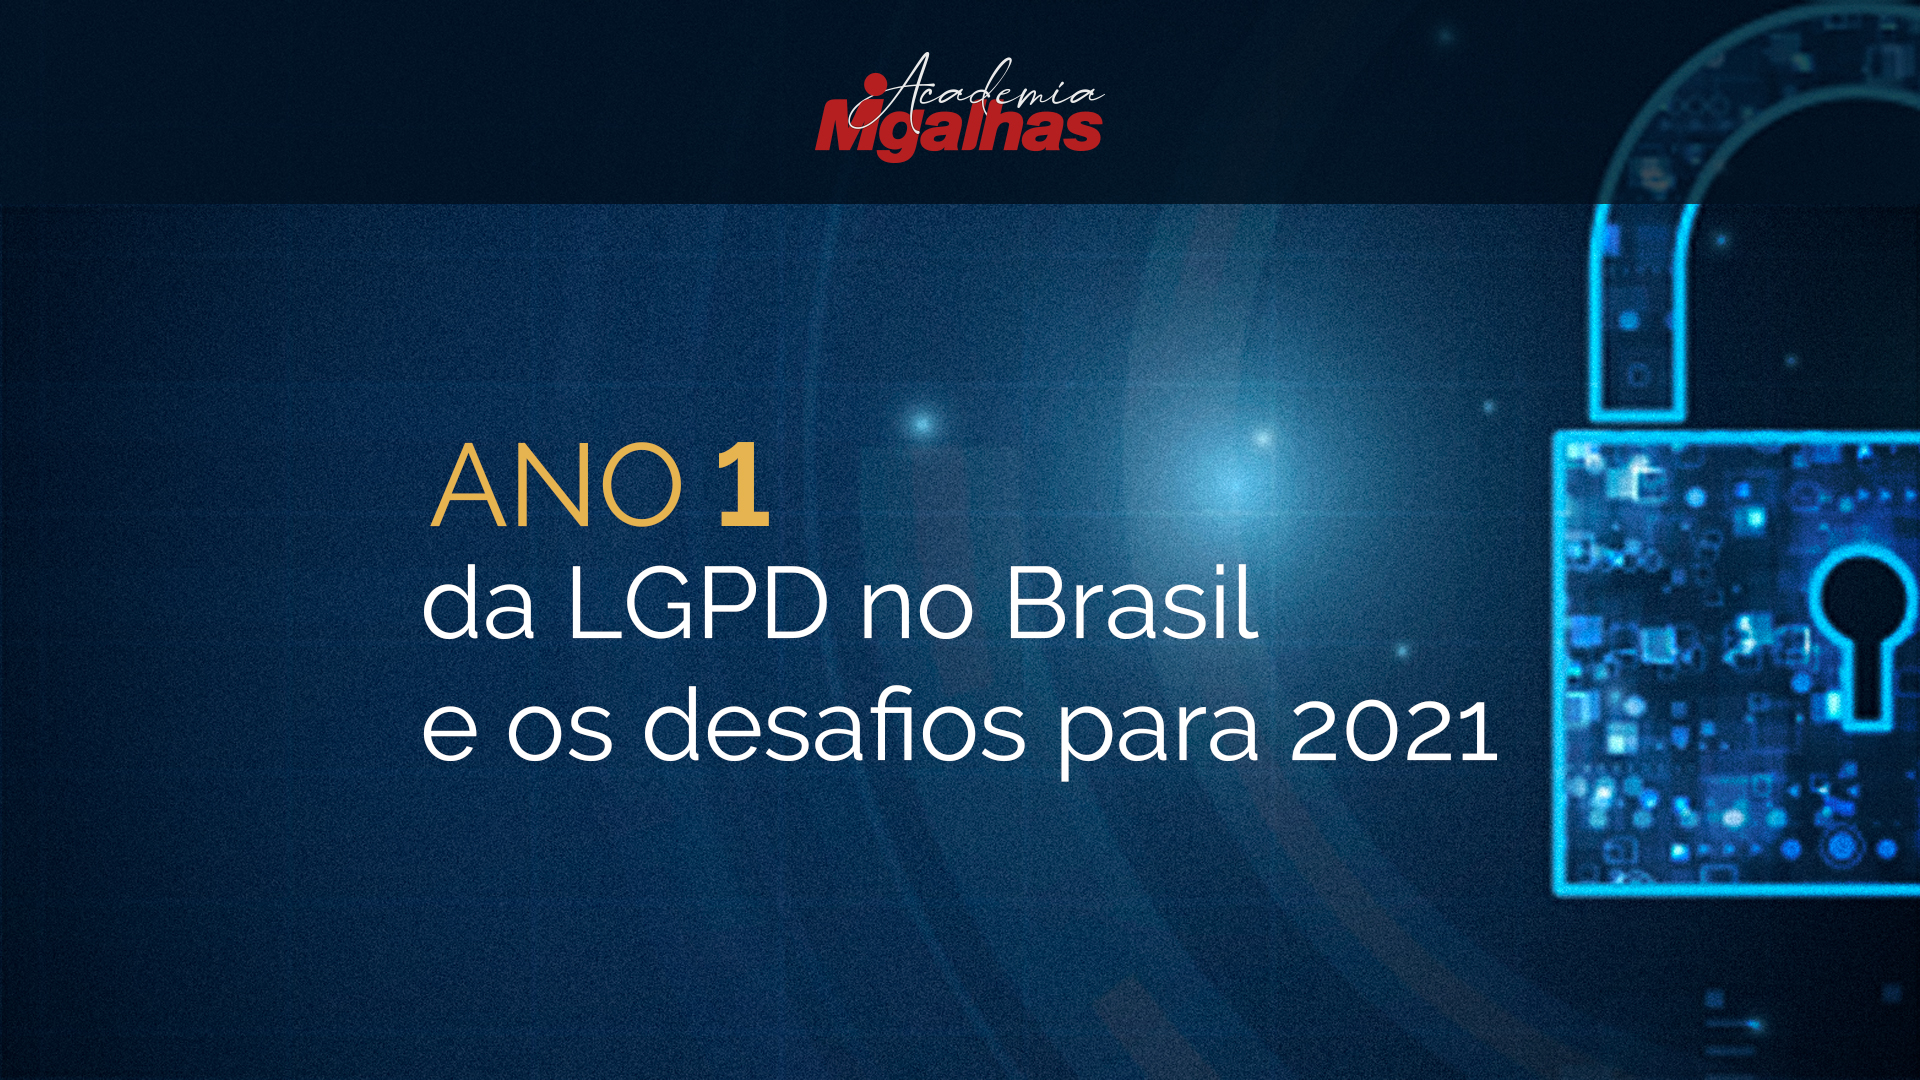 Ano 1 da LGPD no Brasil e os desafios para 2021